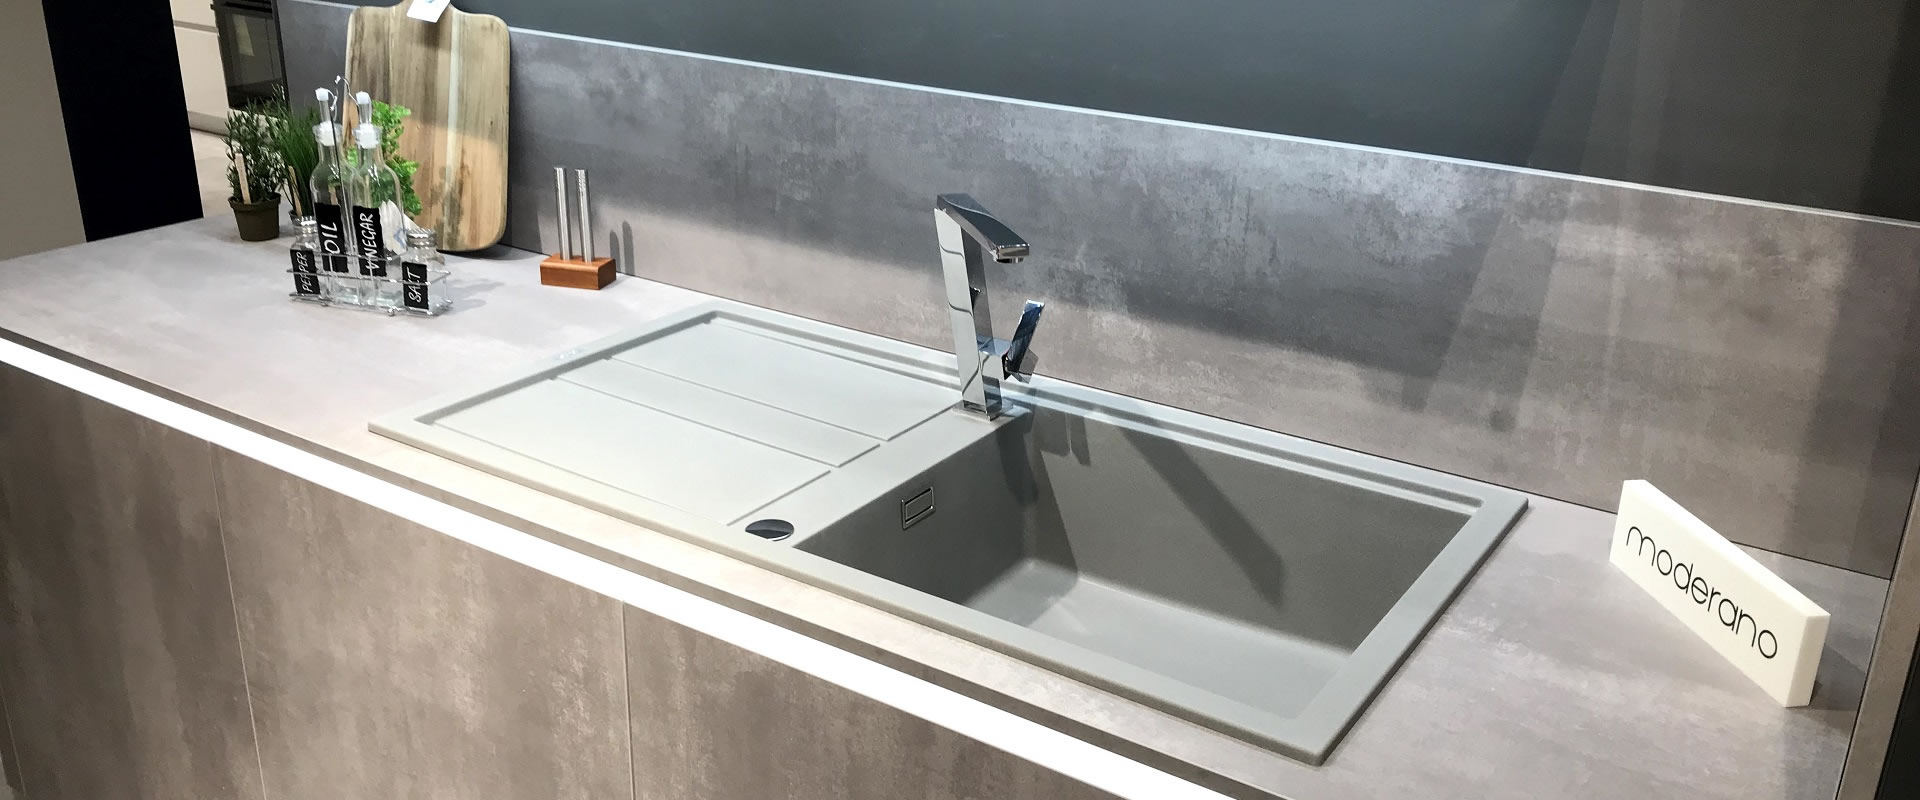 Pronađite savršene modele sudopera i slavina za svoj dom!